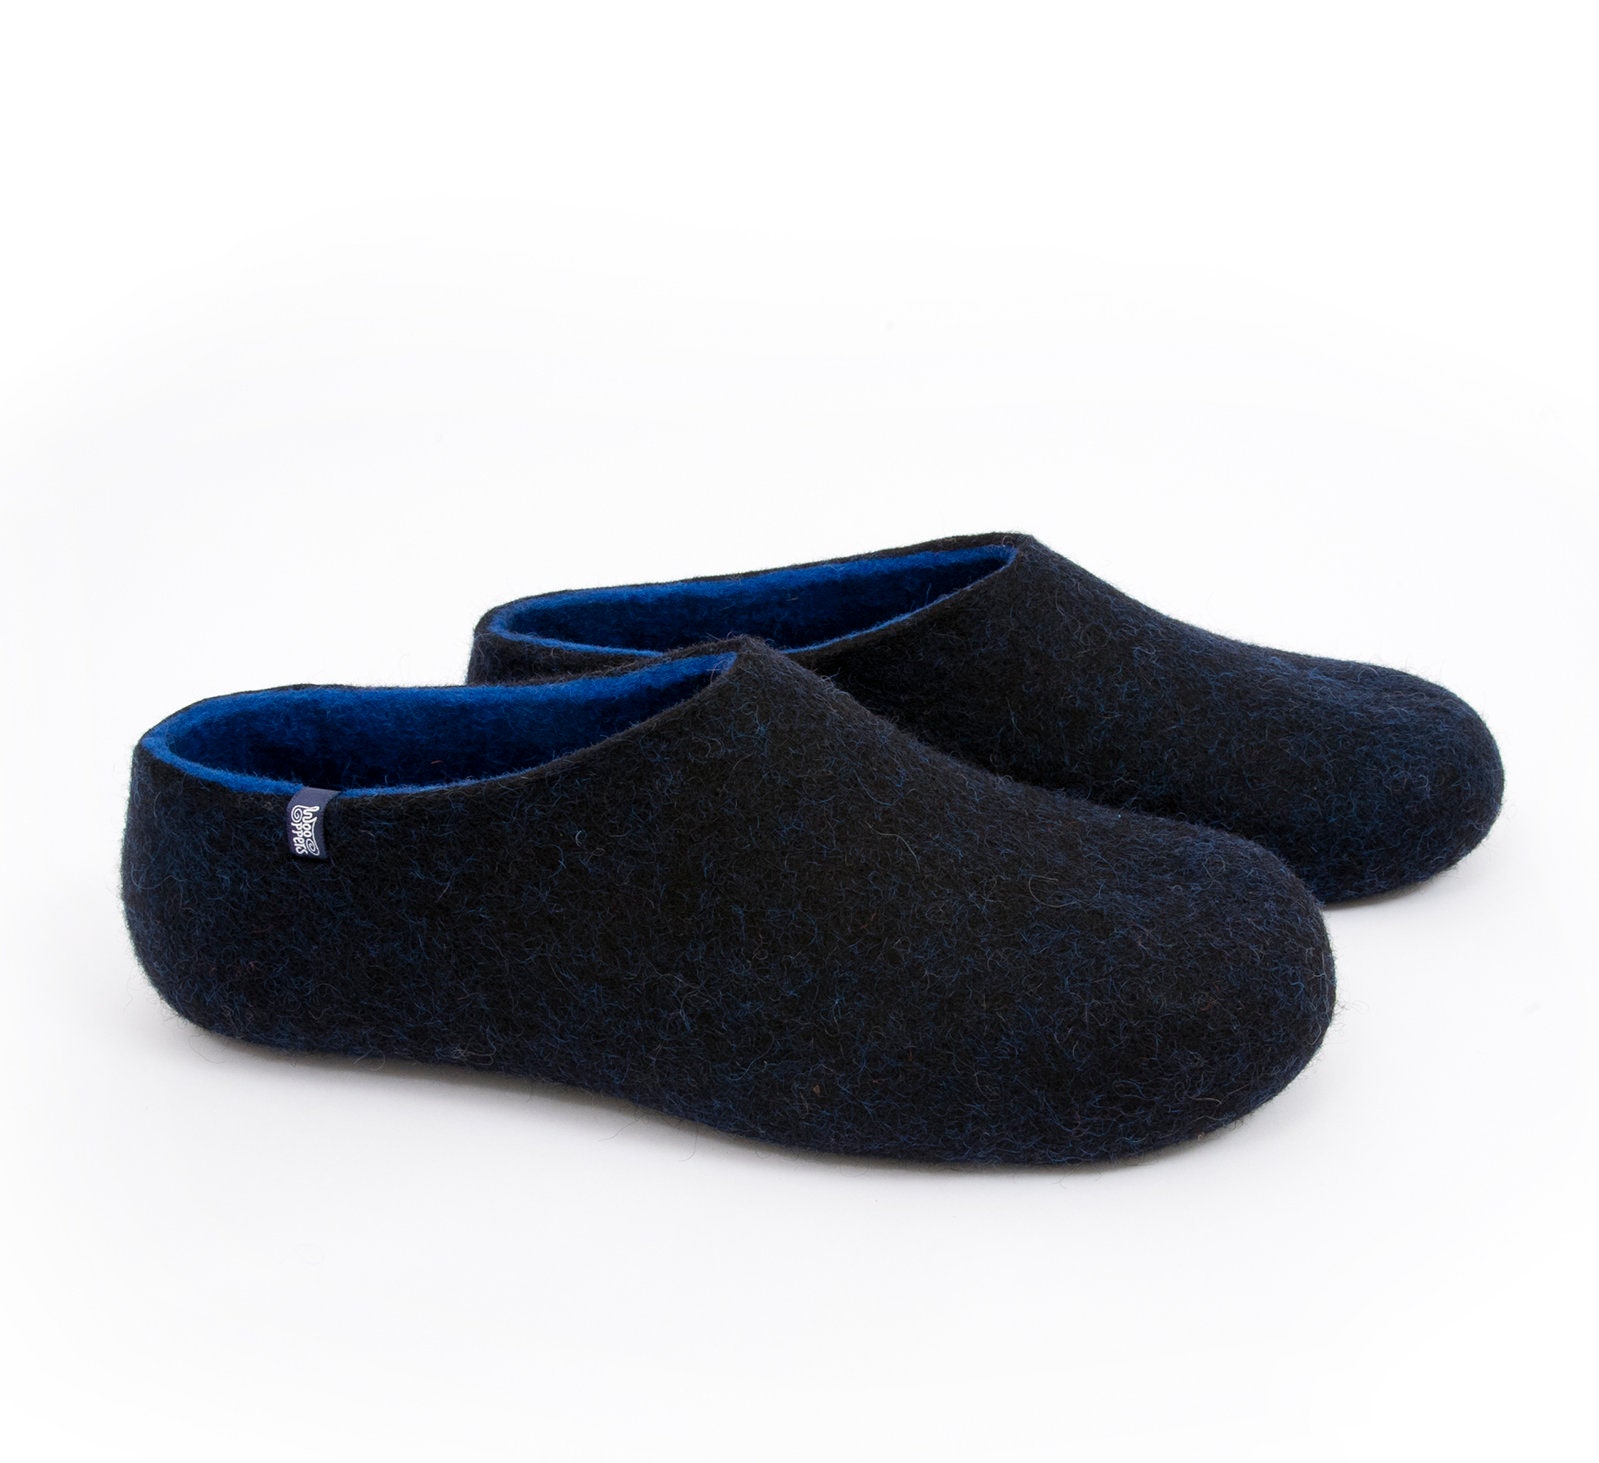 Slippers for Men Felted Wool Slipper Clogs Black & Blue | Etsy